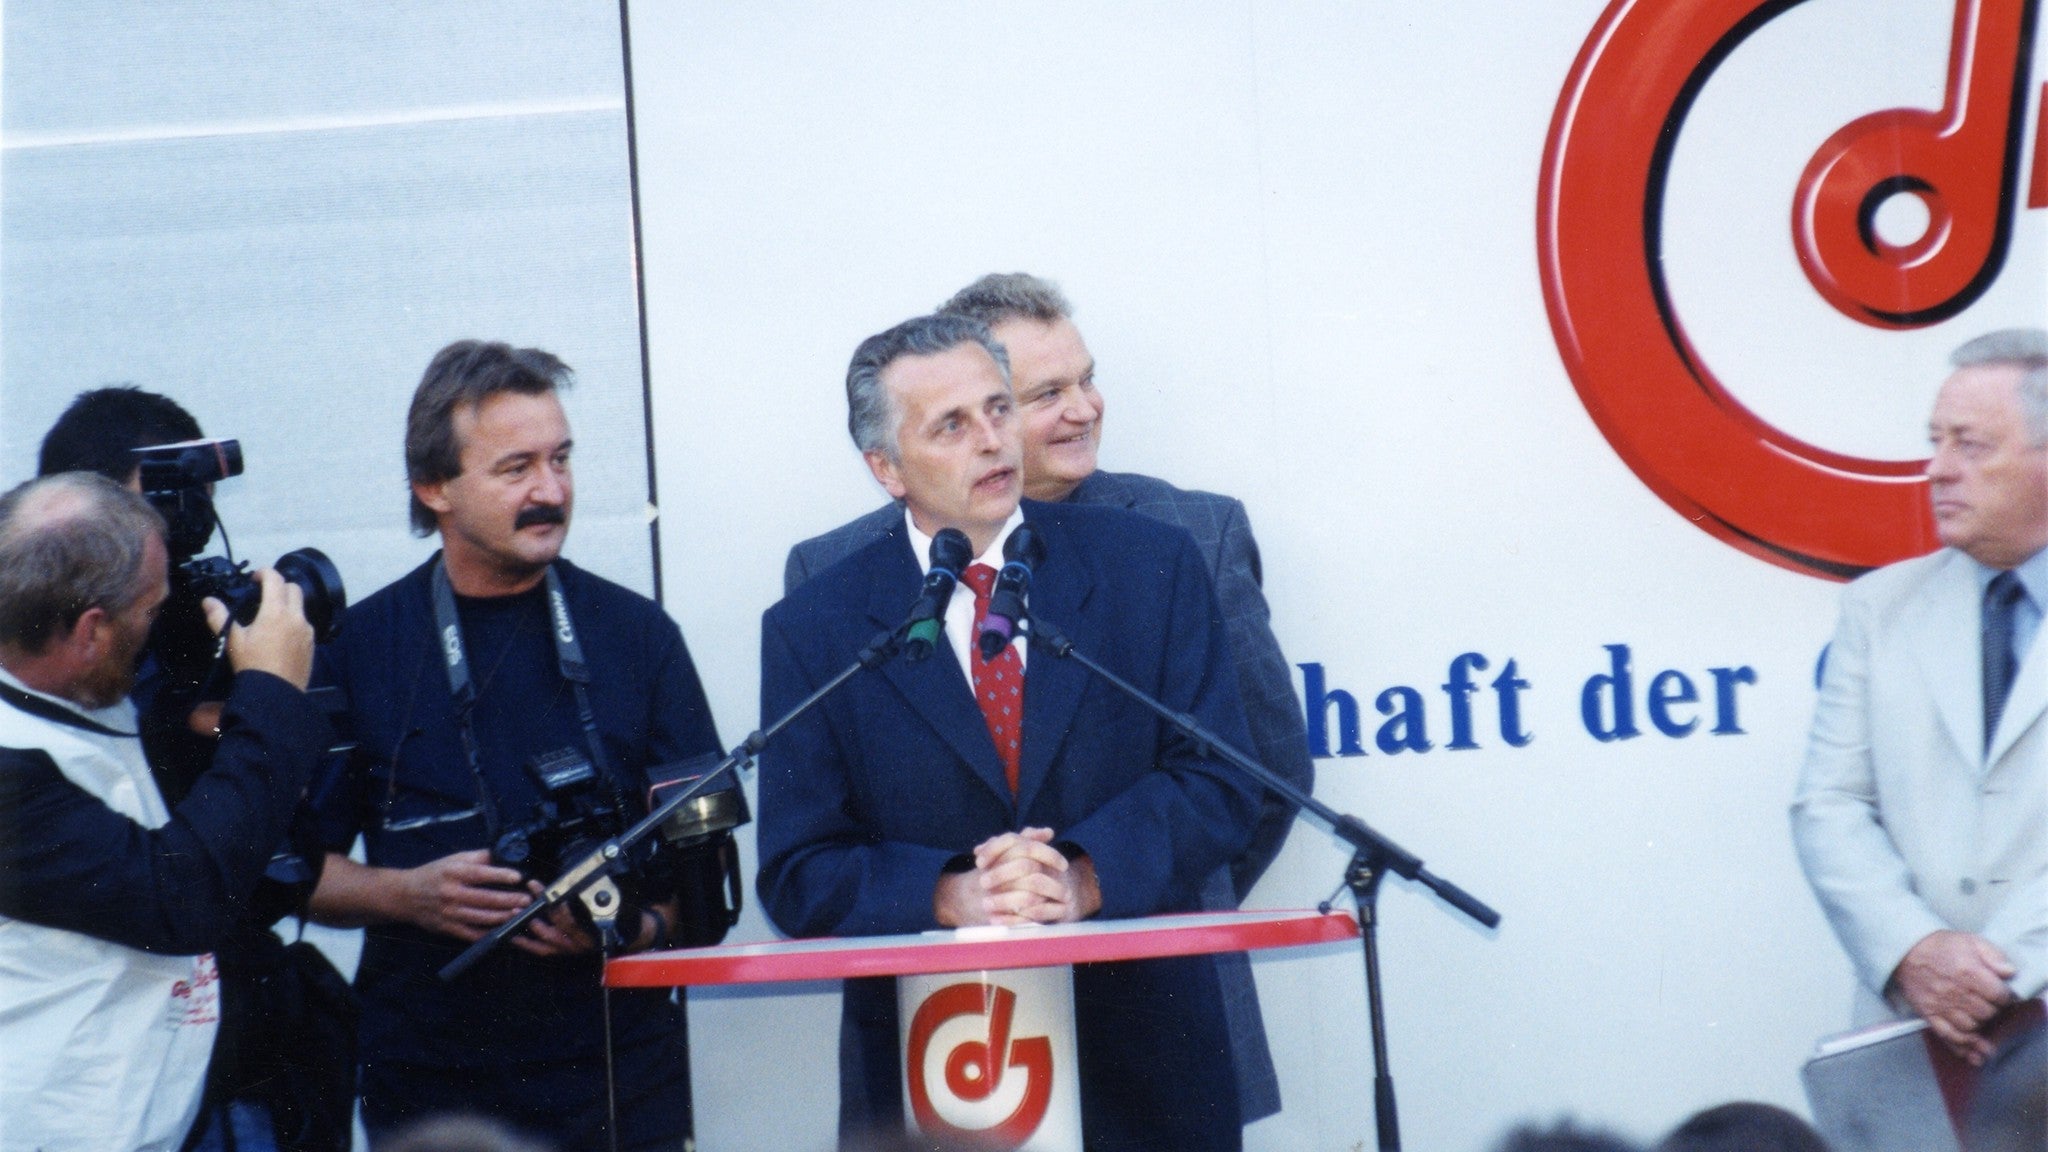 Rudolf Hundstorfer (blauer Anzug, rote Krawatte) spricht in zwei Mikrofone. Logos der Gewerkschaft der Gemeindebediensteten